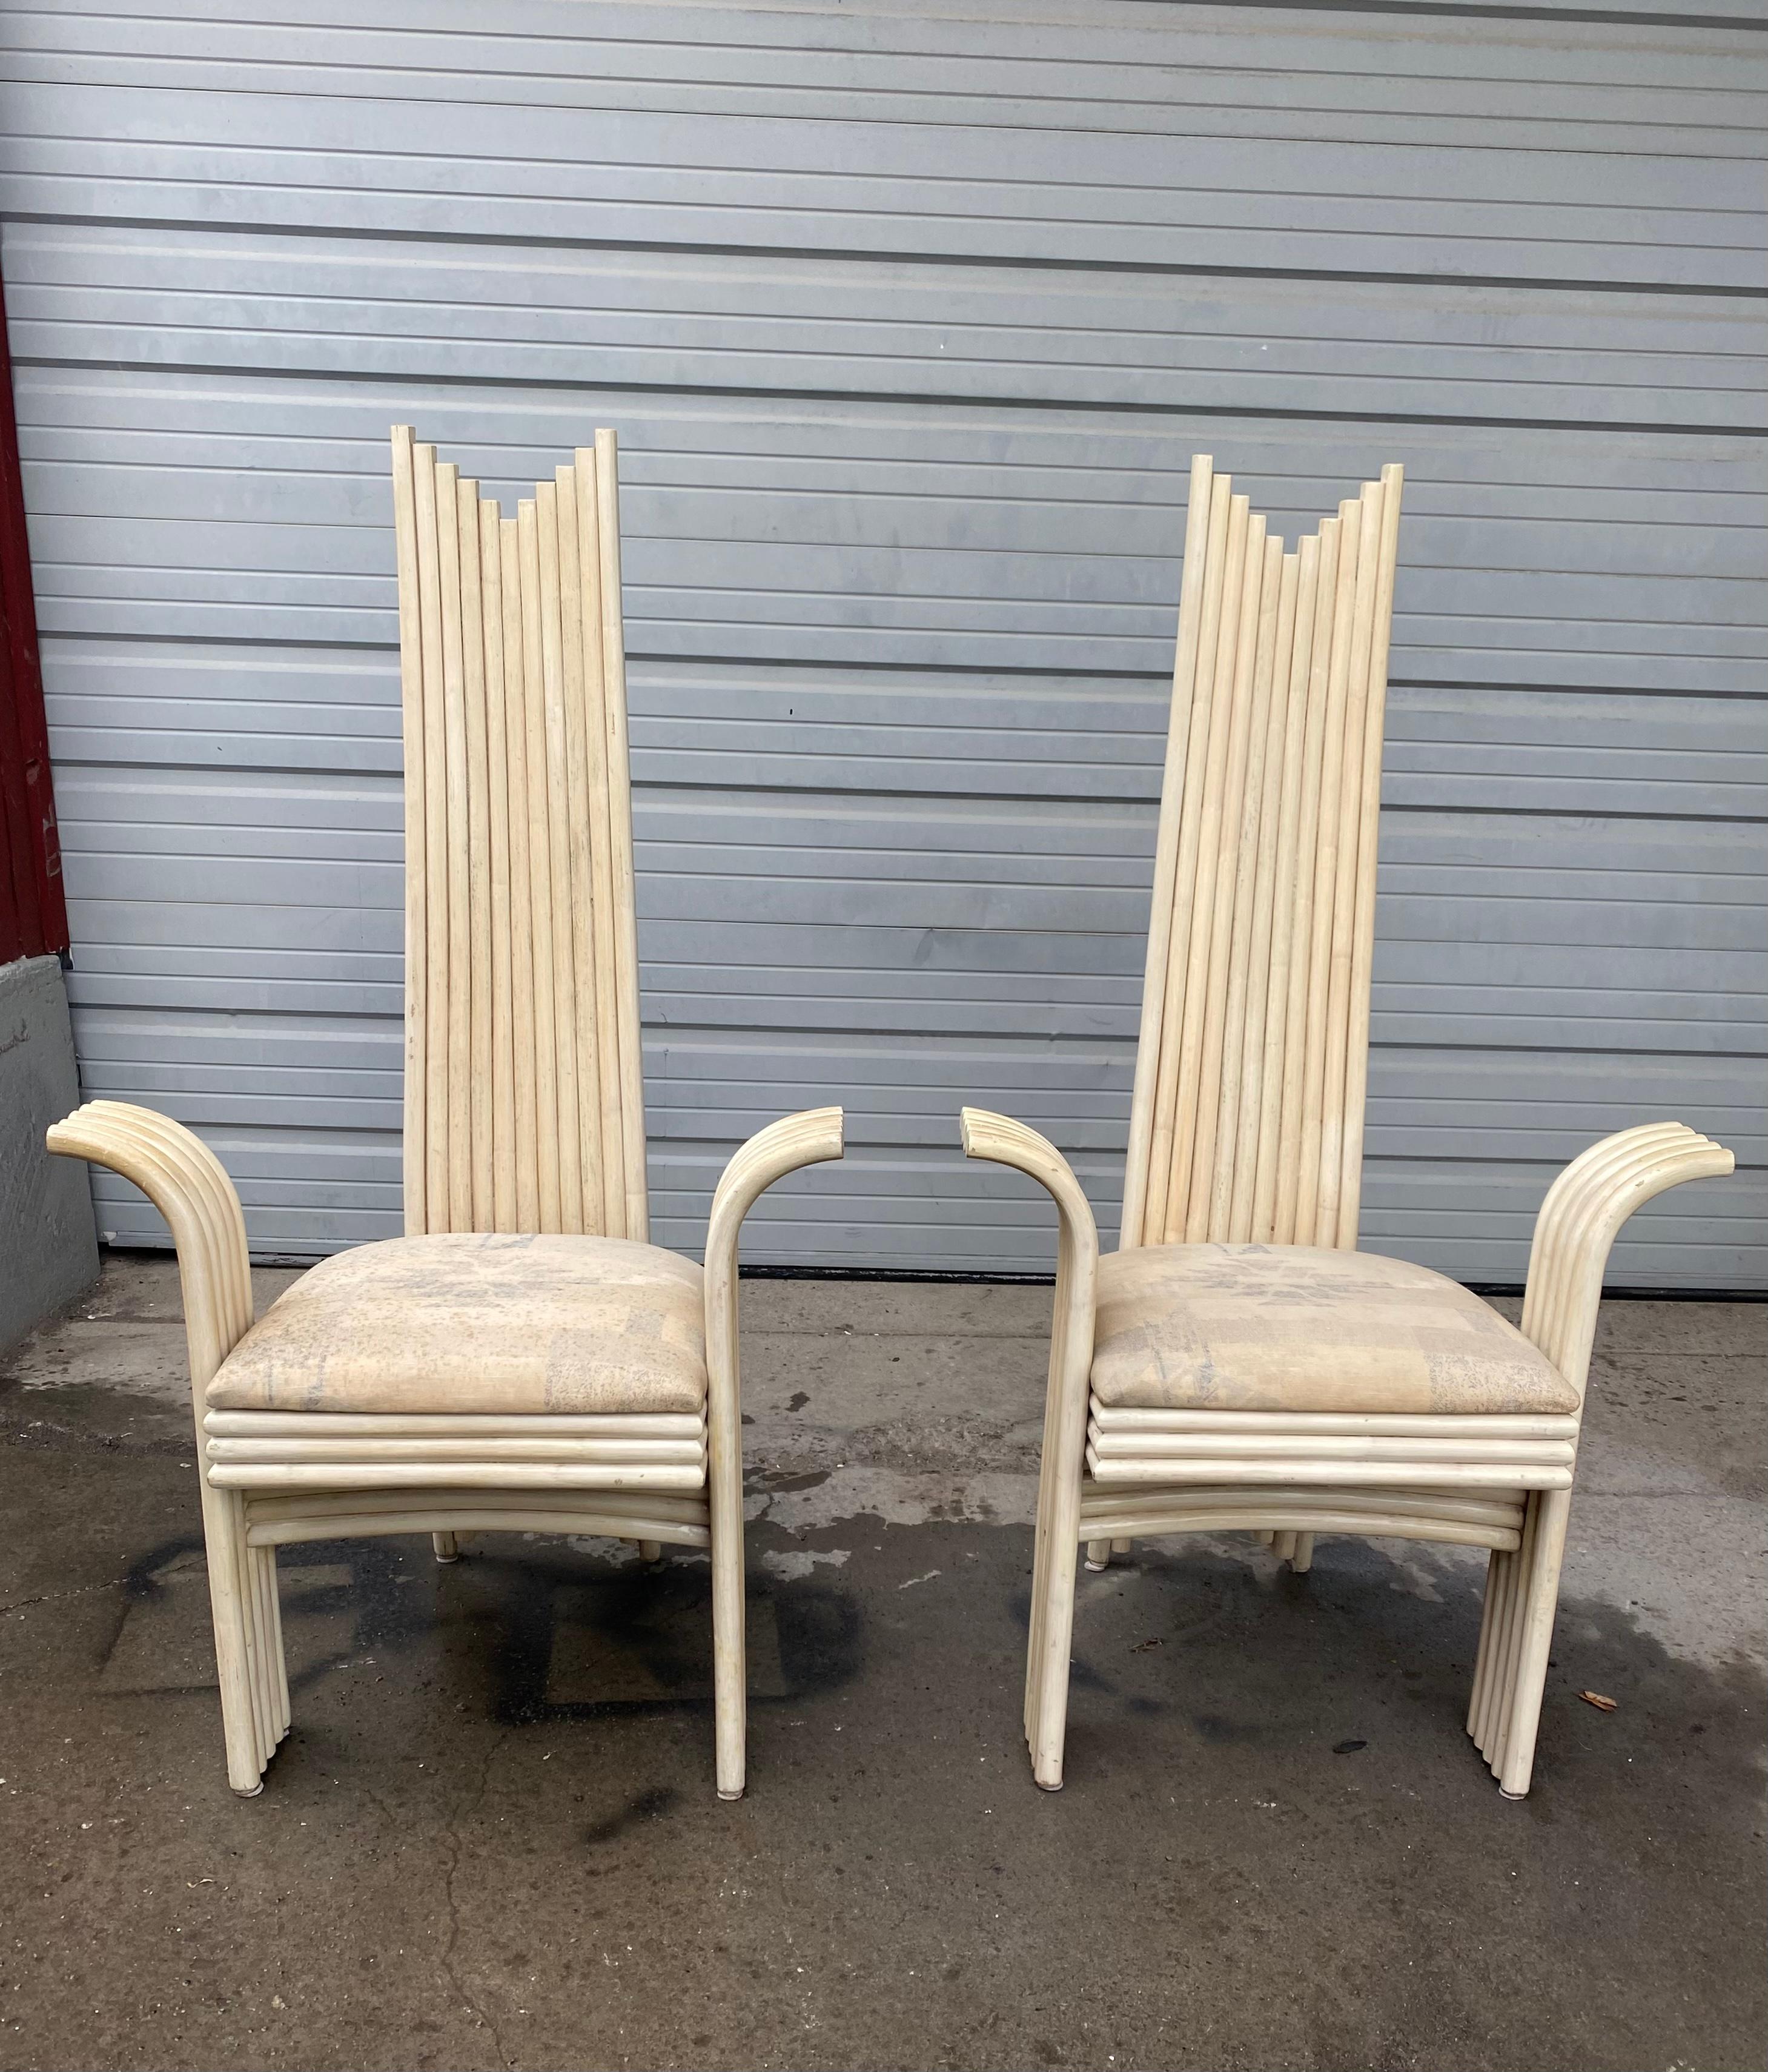  Paire de fauteuils en rotin stylisé à haut dossier incurvé assortis,
Attribué à Danny Ho Fong (Designer)
Fabriqué par Mcguire, les sièges ont besoin d'être restaurés. Livraison en main propre disponible à New York City ou n'importe où en route de